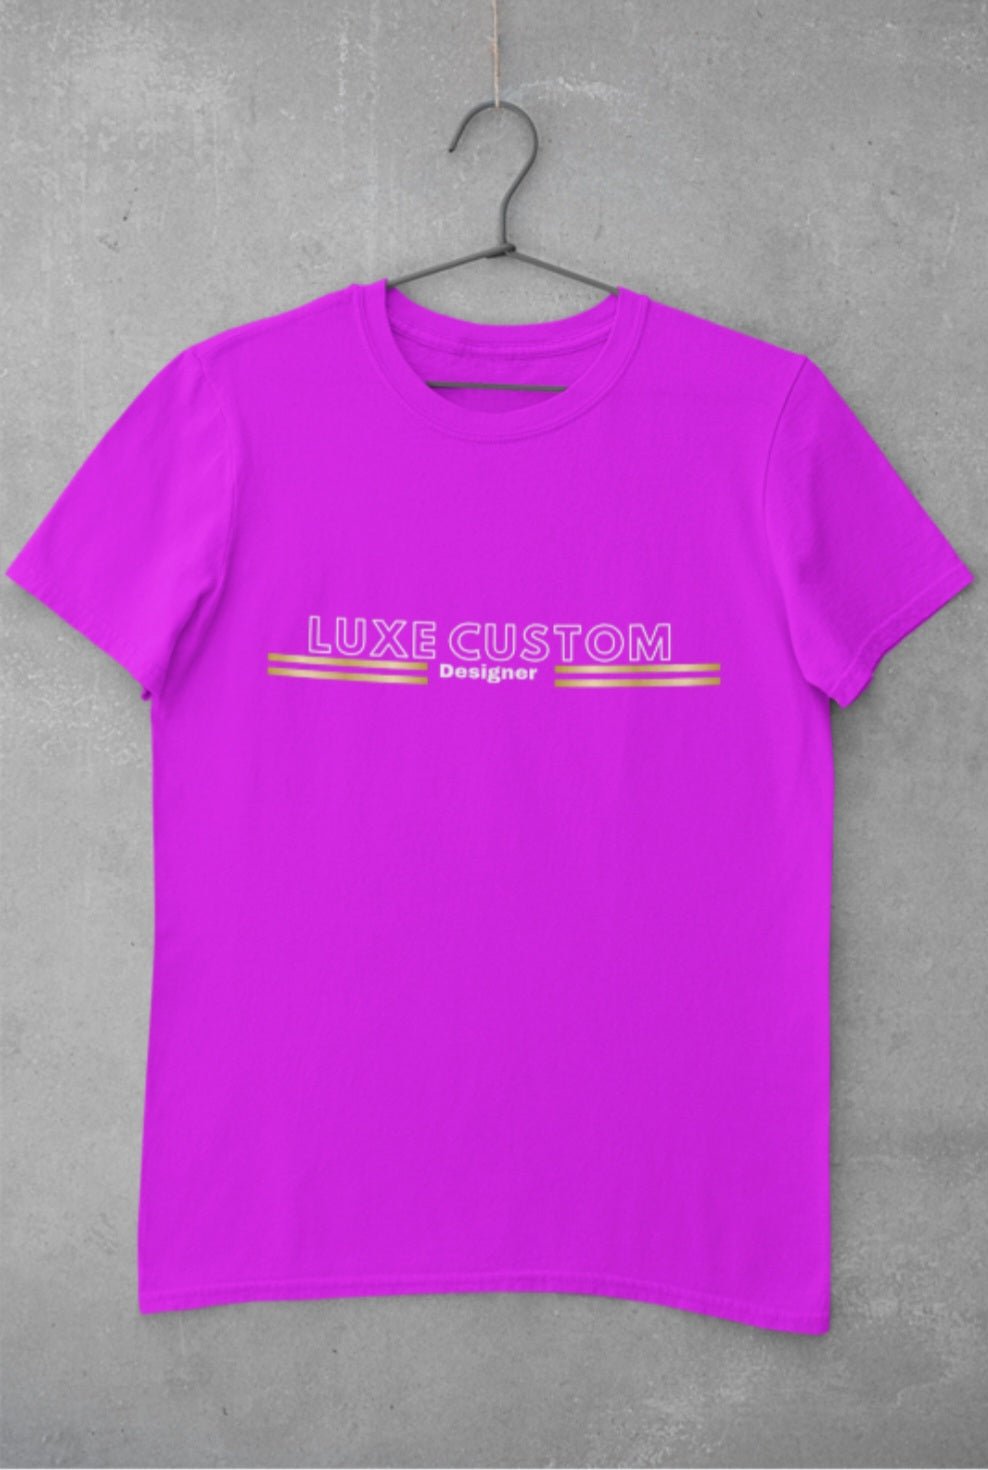 Deluxe T-Shirt - Luxe-Custom-Designer